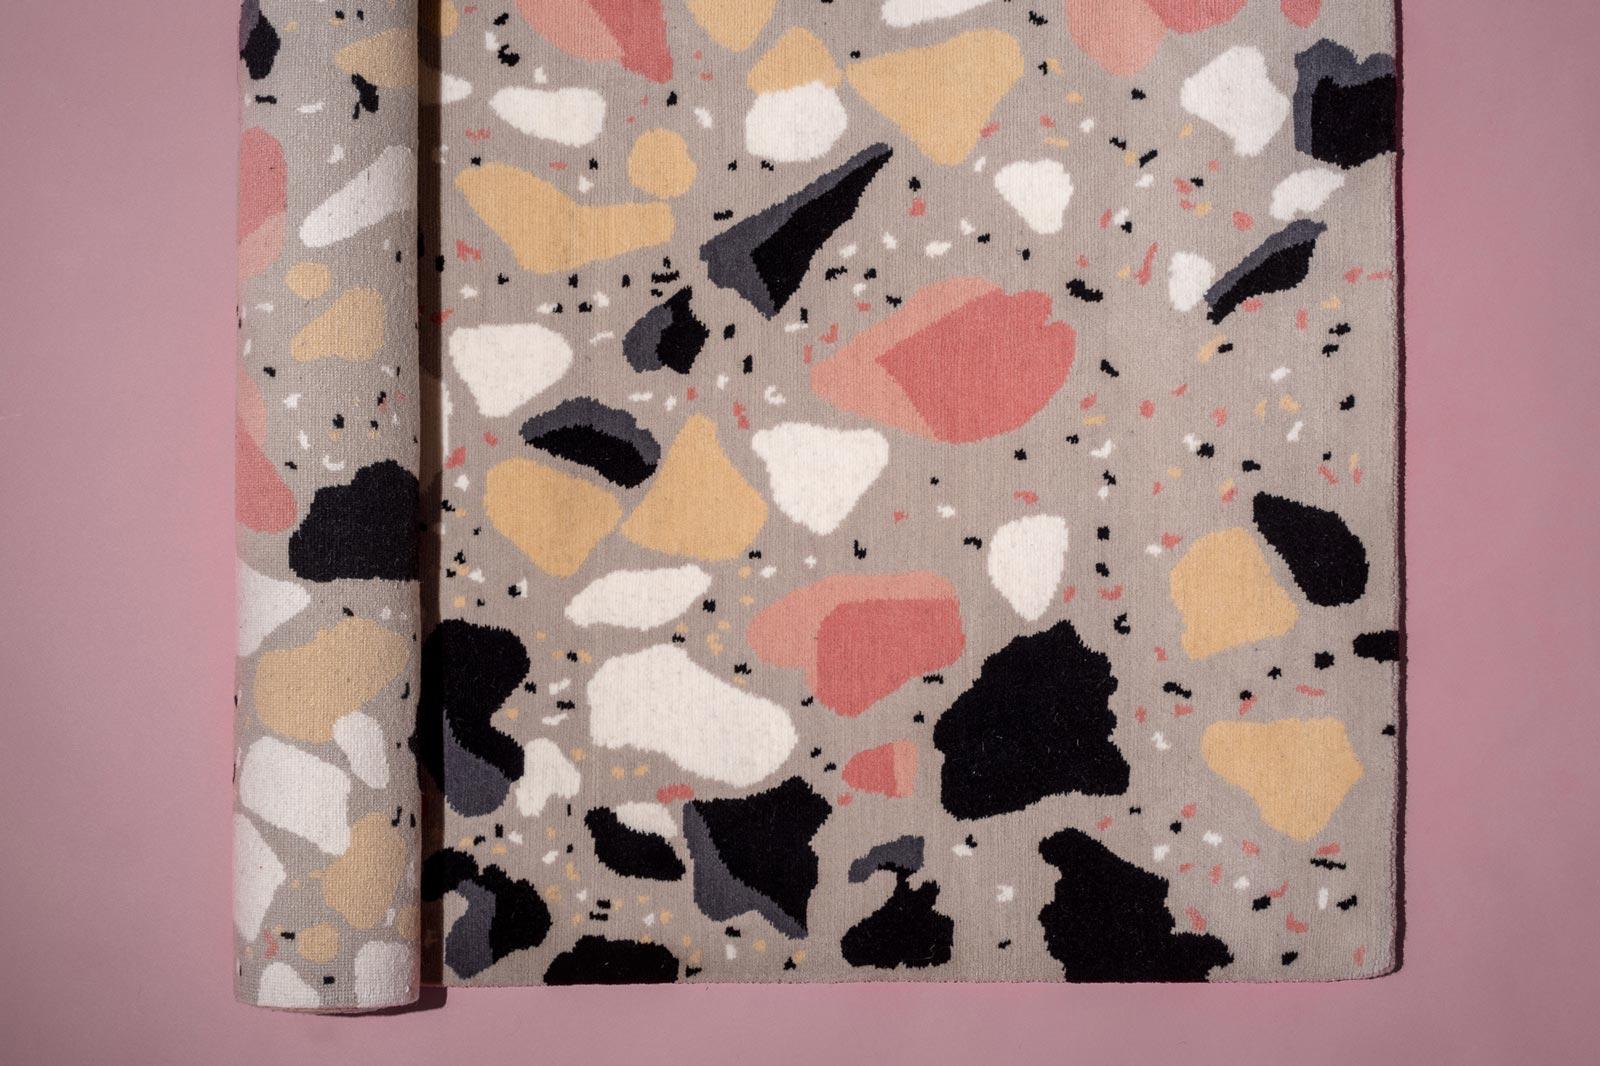 Mediterraneo ist eine Serie von Teppichen, die von den traditionellen italienischen Terrazzoböden inspiriert sind. 

Die Muster werden von Sergio selbst in seinem Studio in Brooklyn, New York, von Hand gezeichnet. Die Bilder werden dann auf Papier